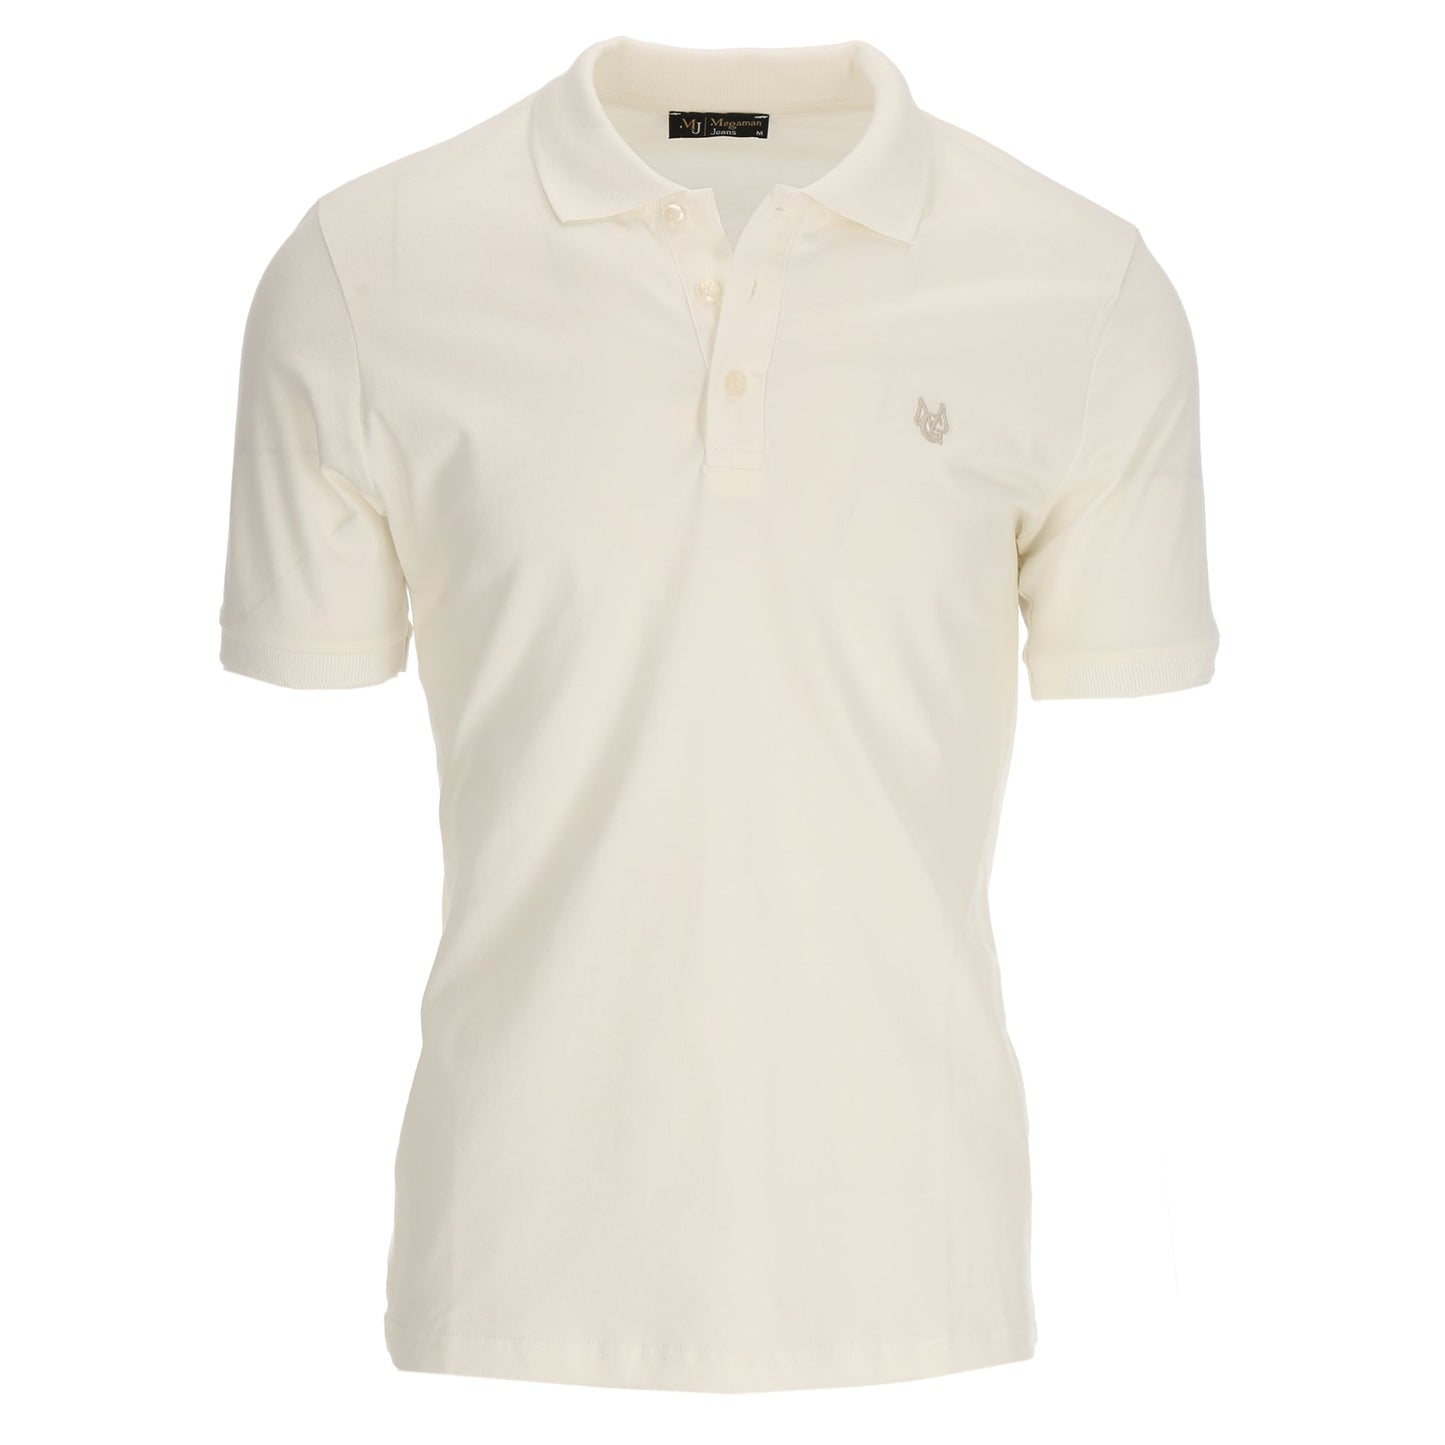 Poloshirt Basic T-Shirt Kragen Shirt Weiß